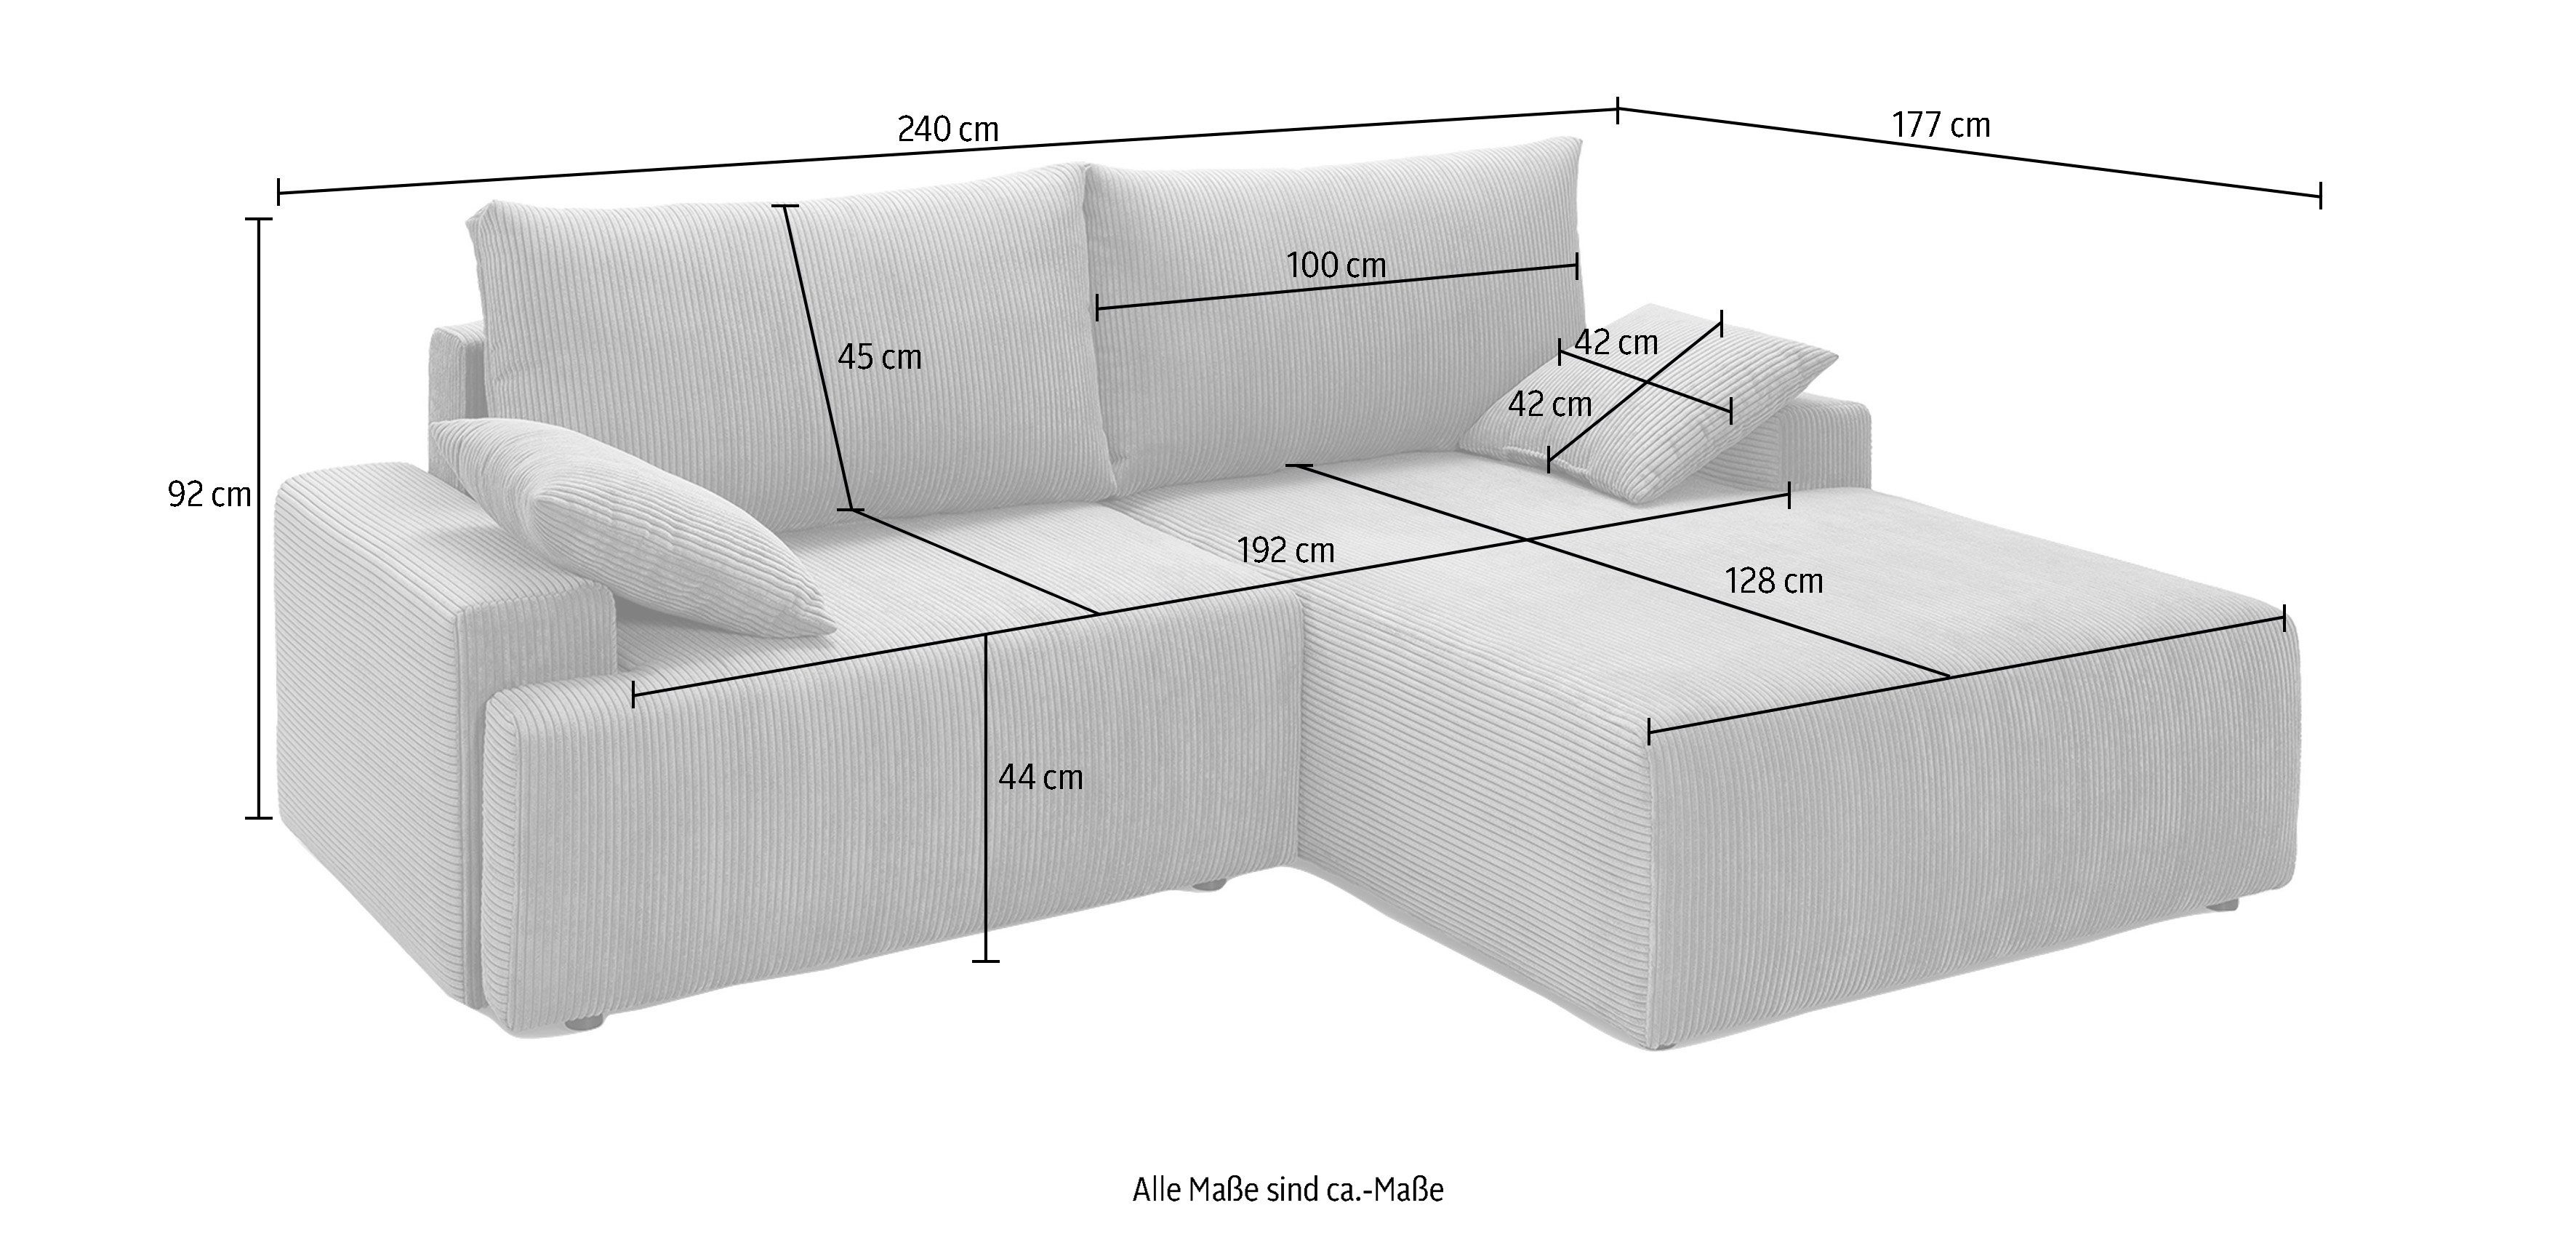 Orinoko, Cord-Farben Bettfunktion Bettkasten anthrazith und Ecksofa verschiedenen exxpo sofa in - fashion inklusive